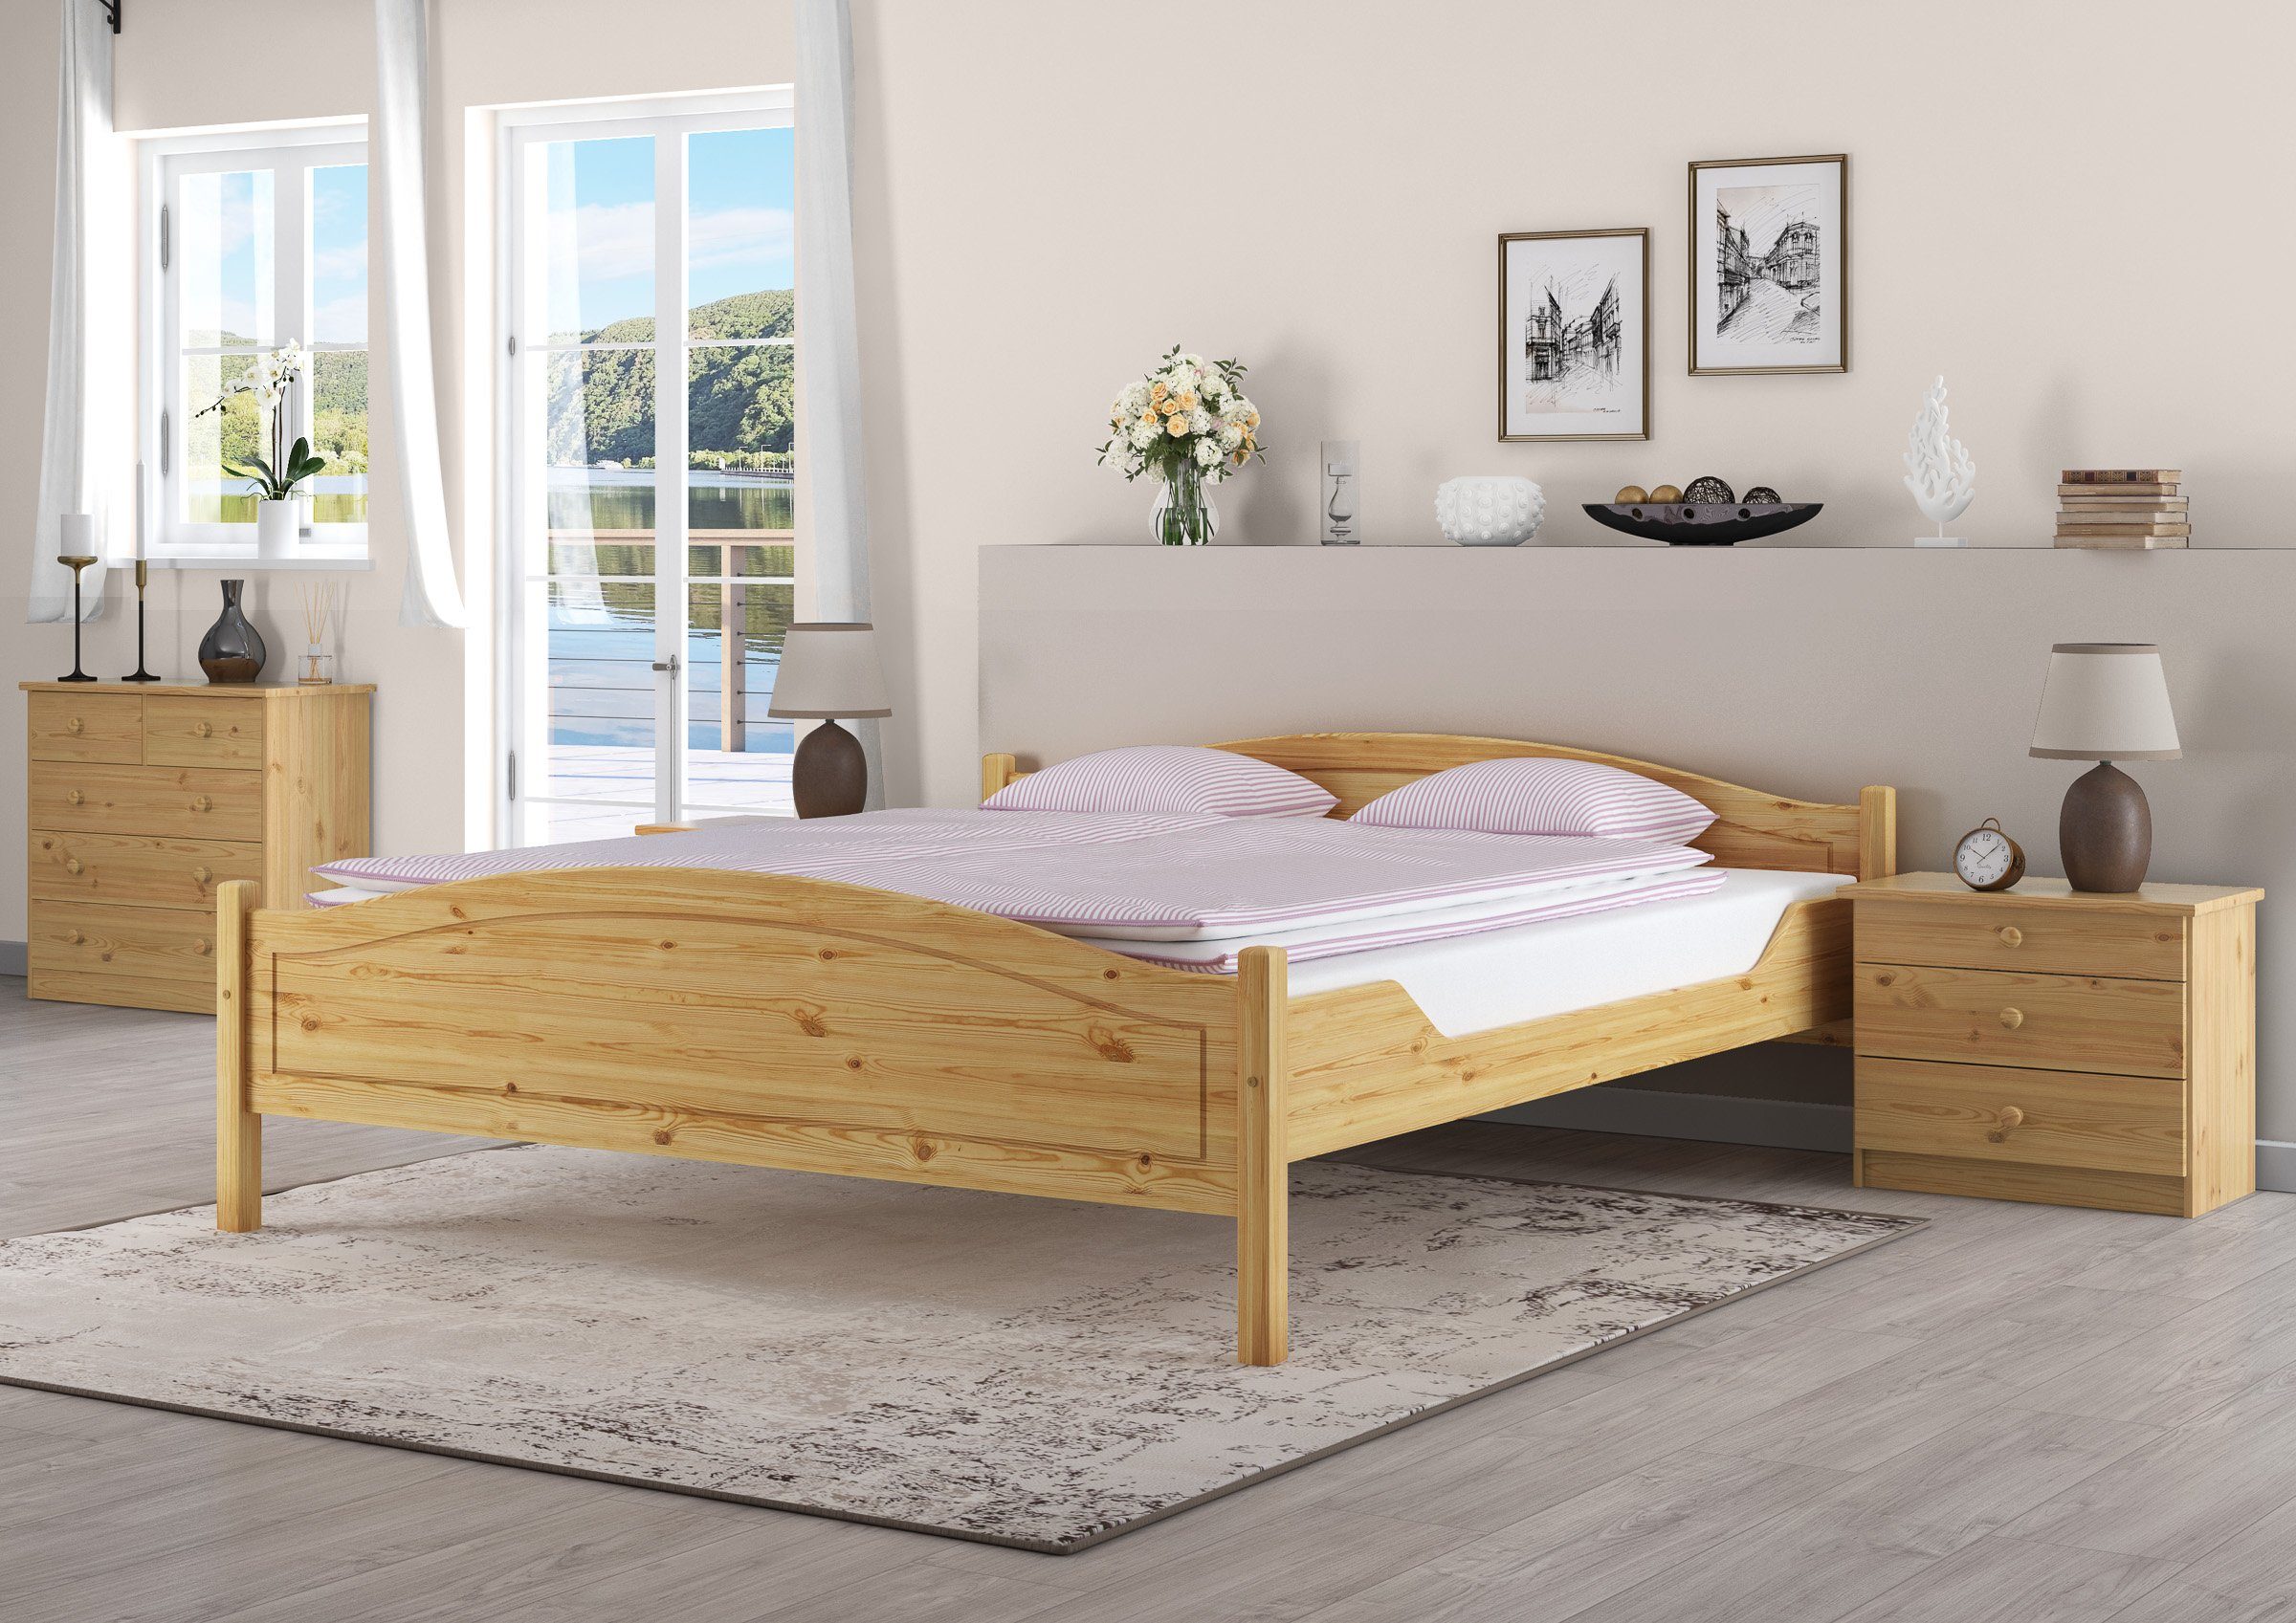 massiv Klassisches Kiefer ERST-HOLZ Bett 180x200 Doppelbett, Holzbett lackiert Kieferfarblos